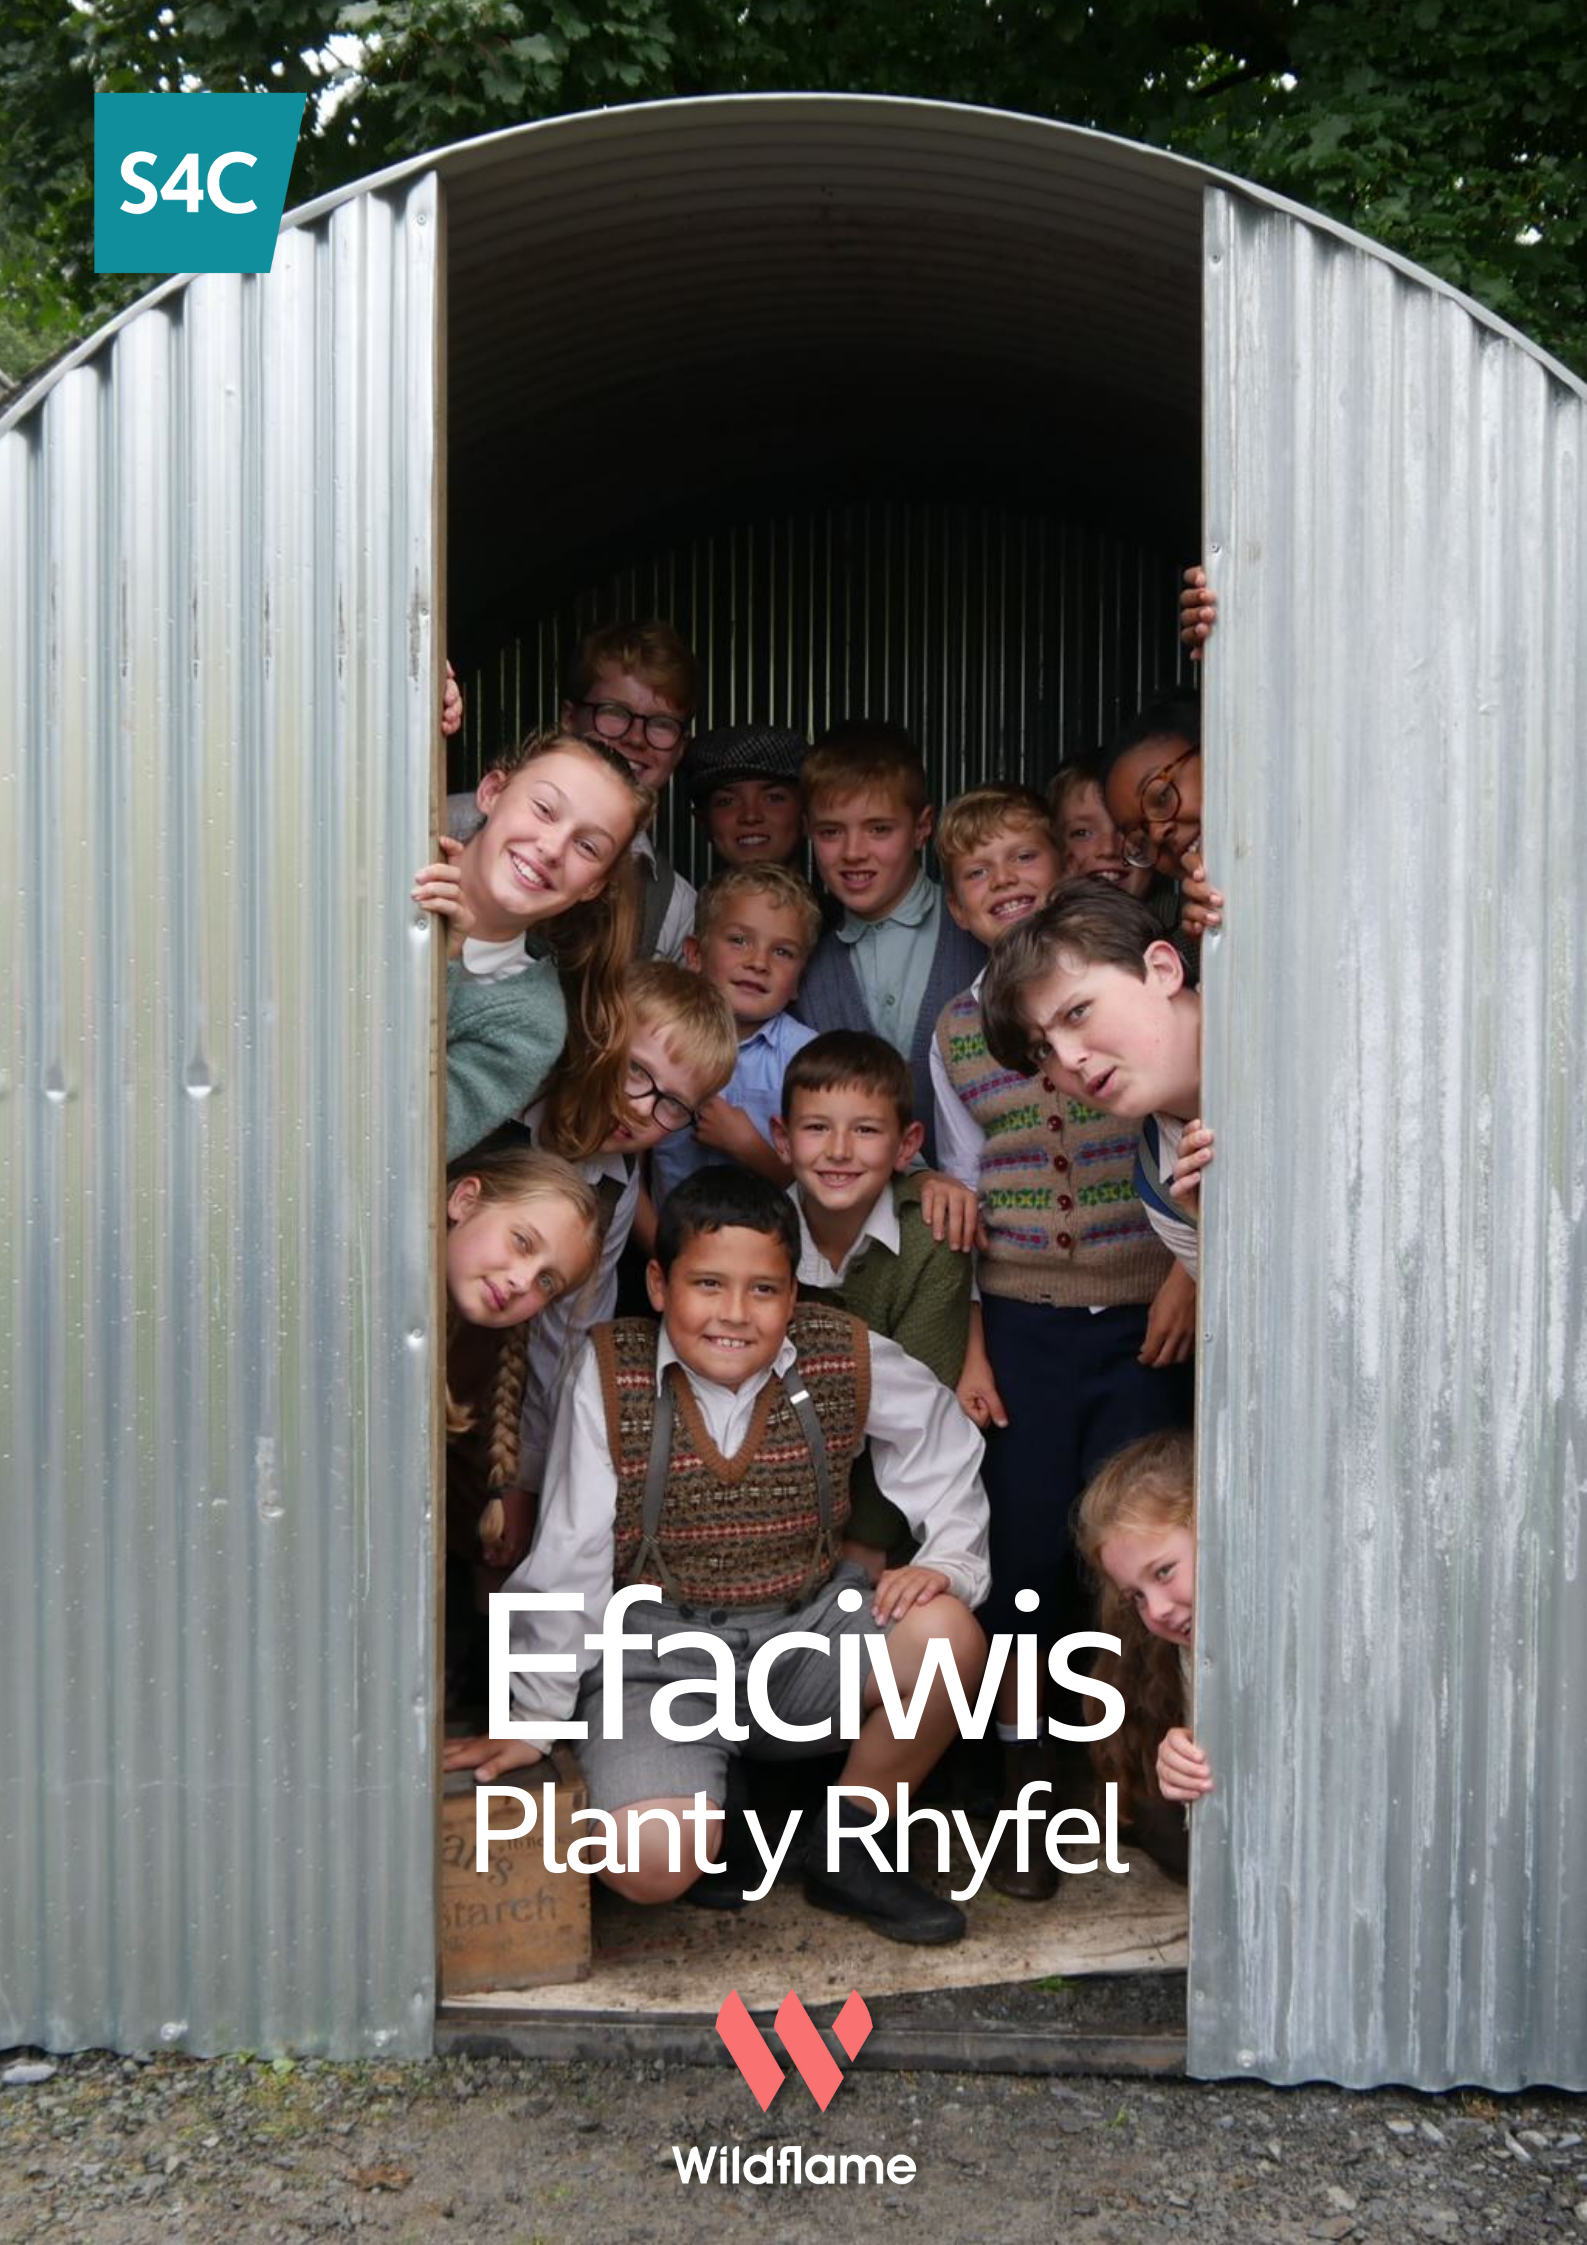 Efaciwis: Plant Y Rhyfel